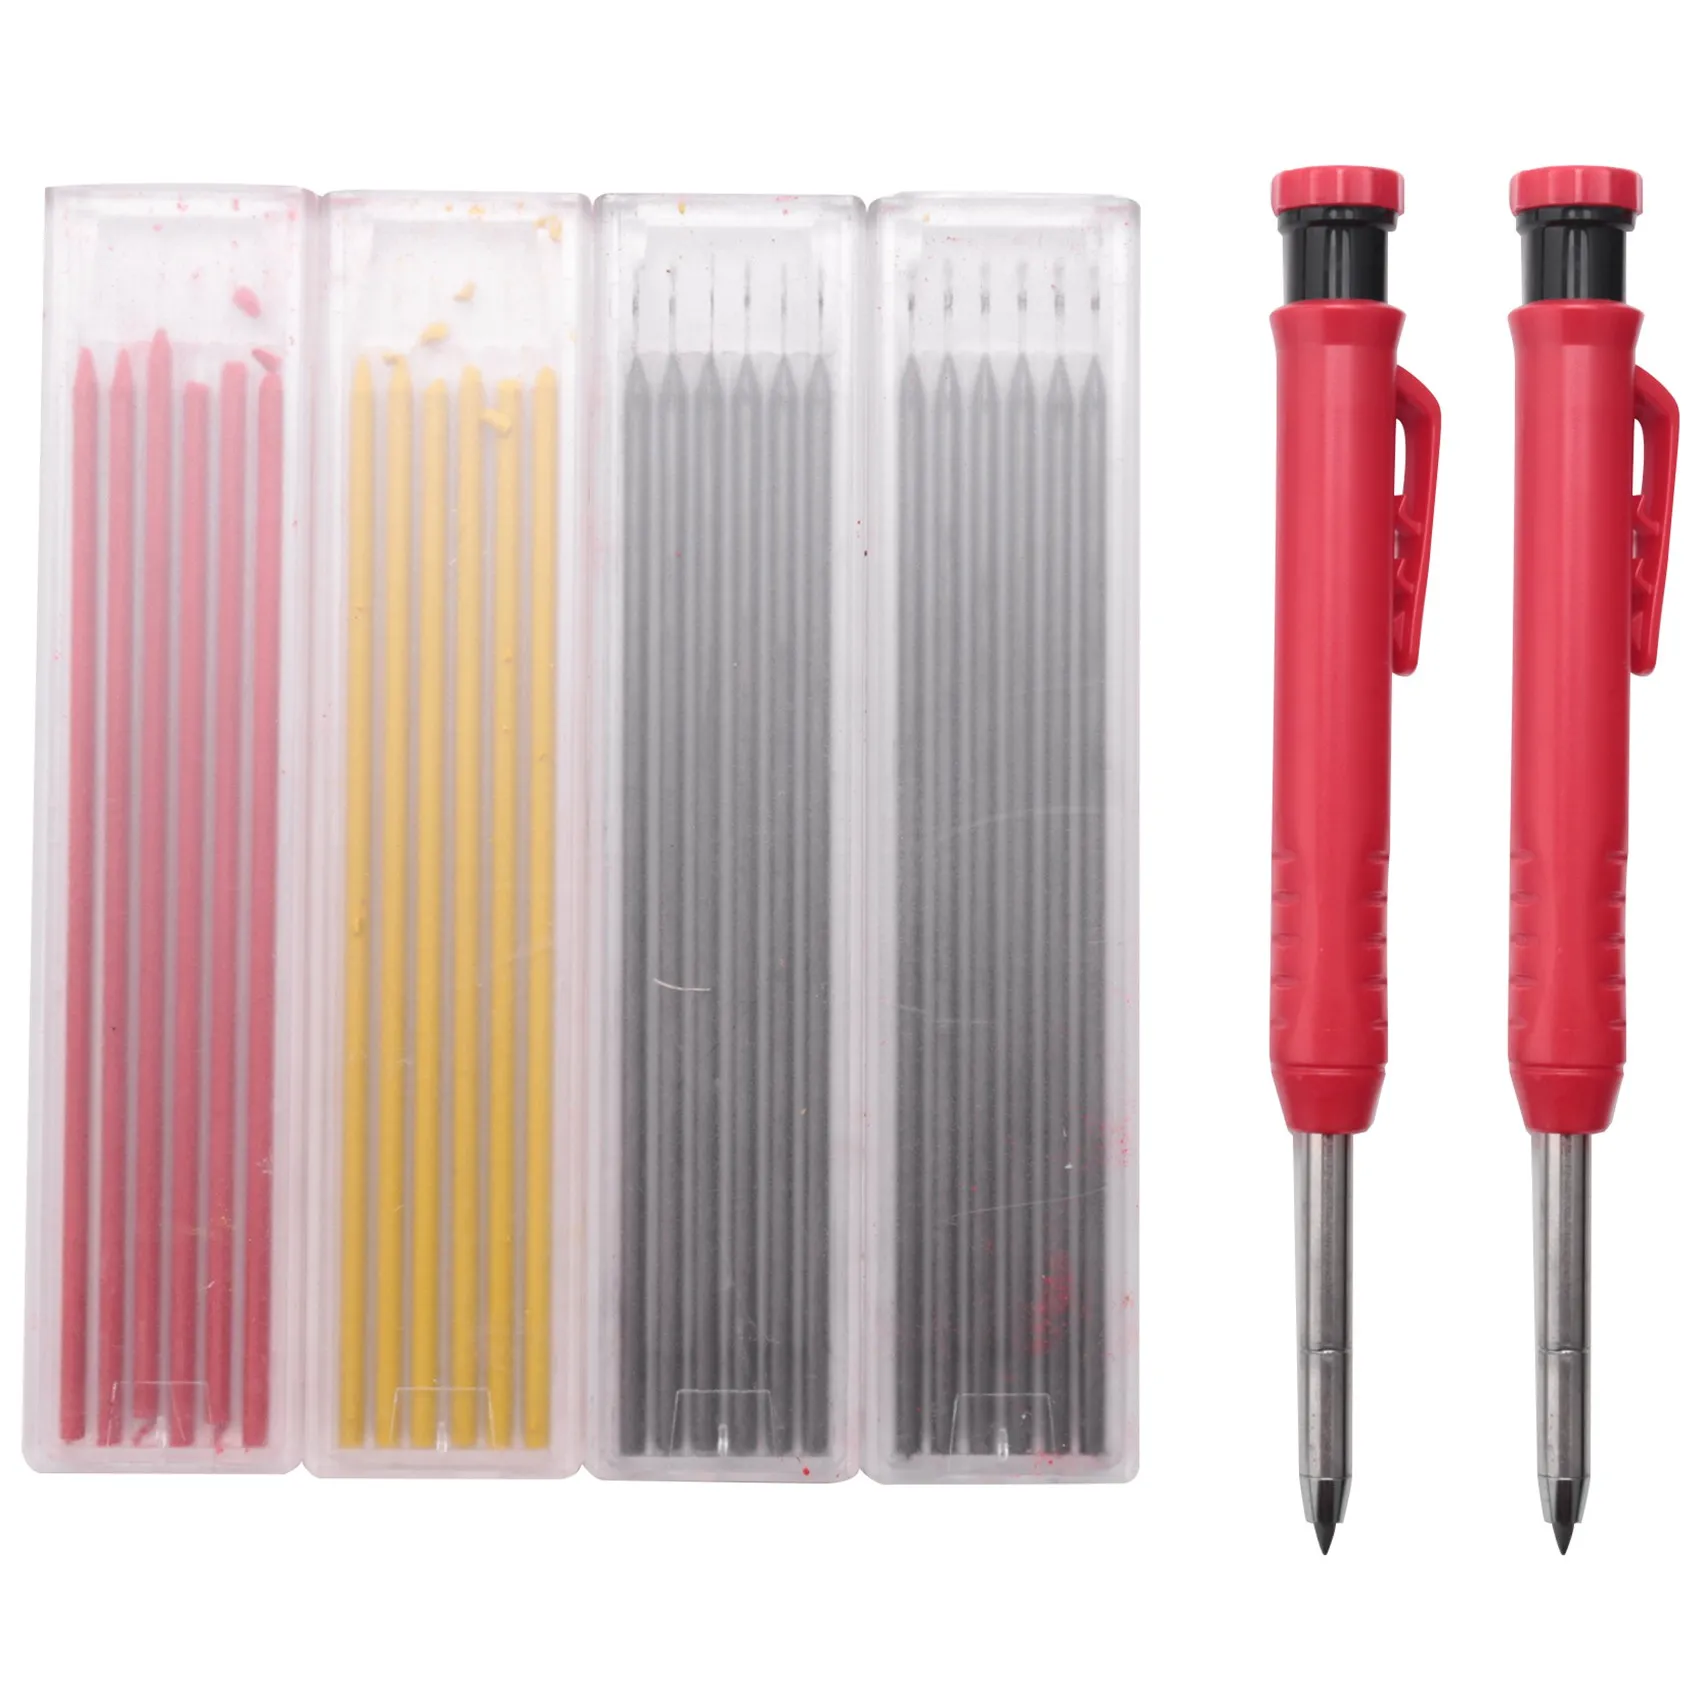 

Столярные карандаши с набор-точилка, плотничные маркеры, механические карандаши с длинным носом и глубоким отверстием, подходят для архитекторов